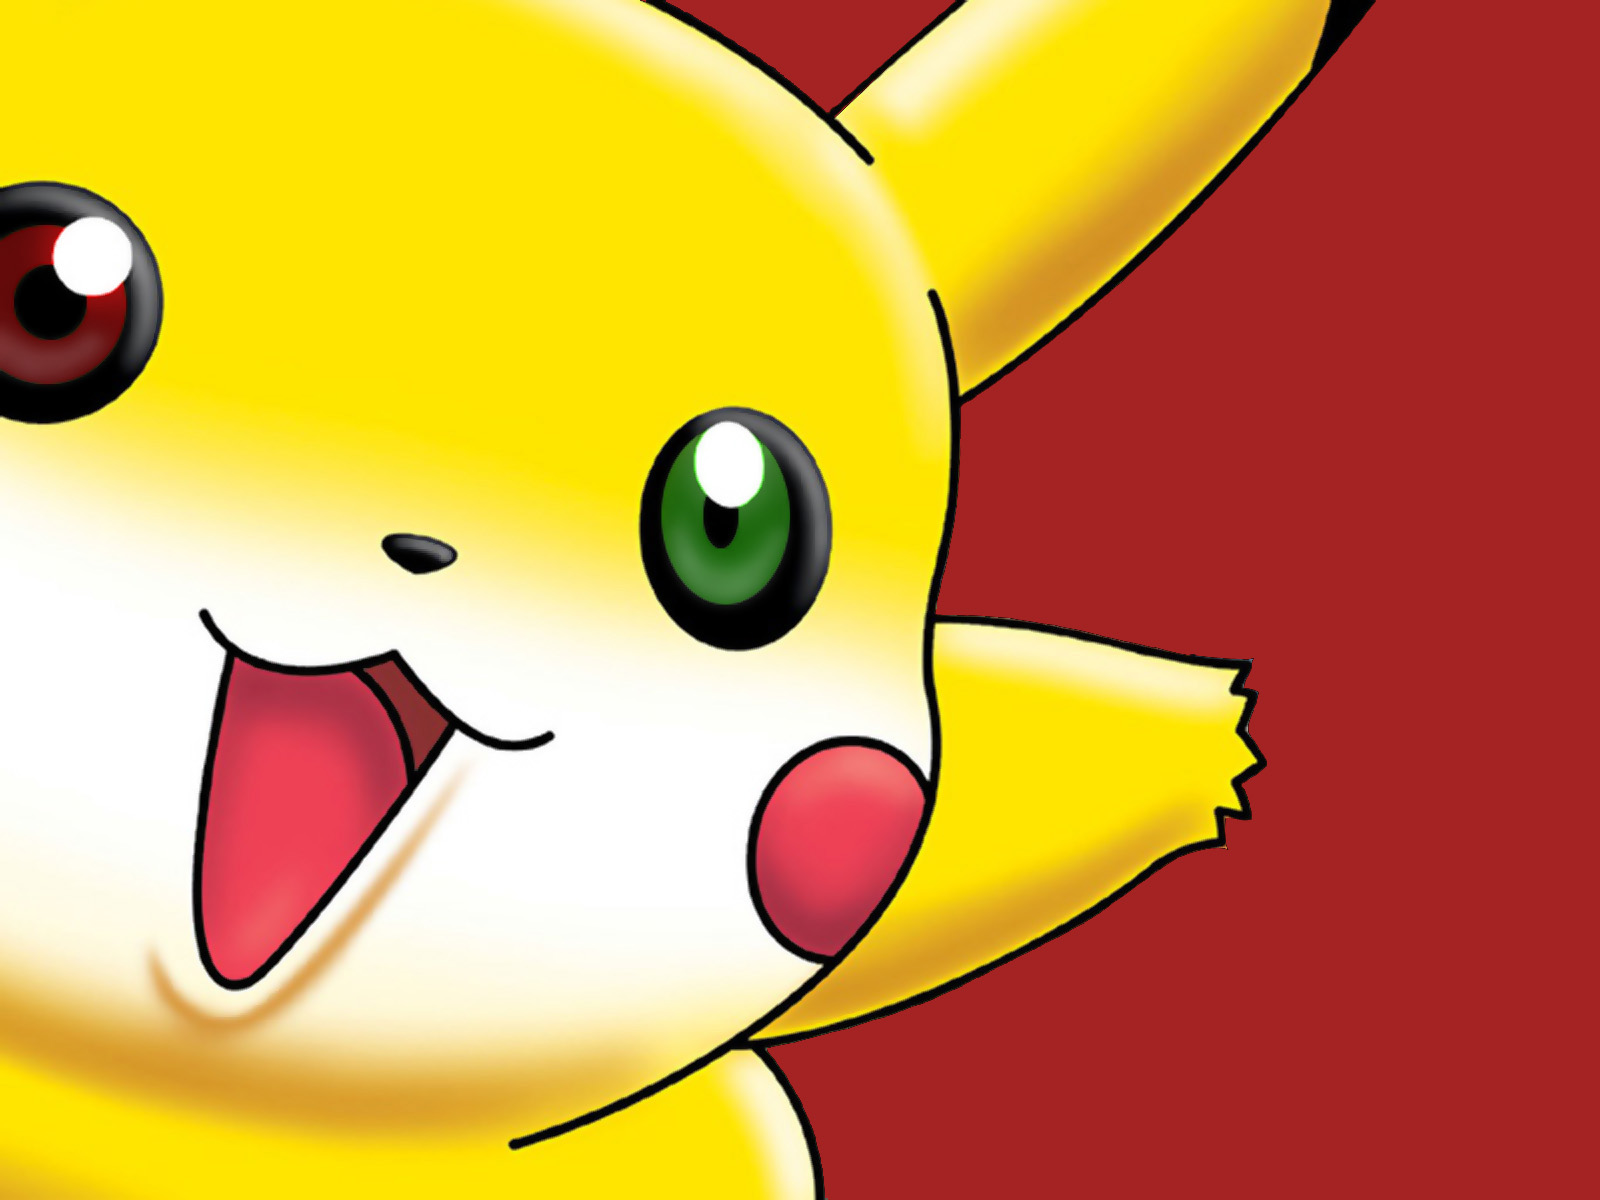 999 Hình Nền Pokemon 3d Đẹp GỢI NHỚ TUỔI ẤU THƠ